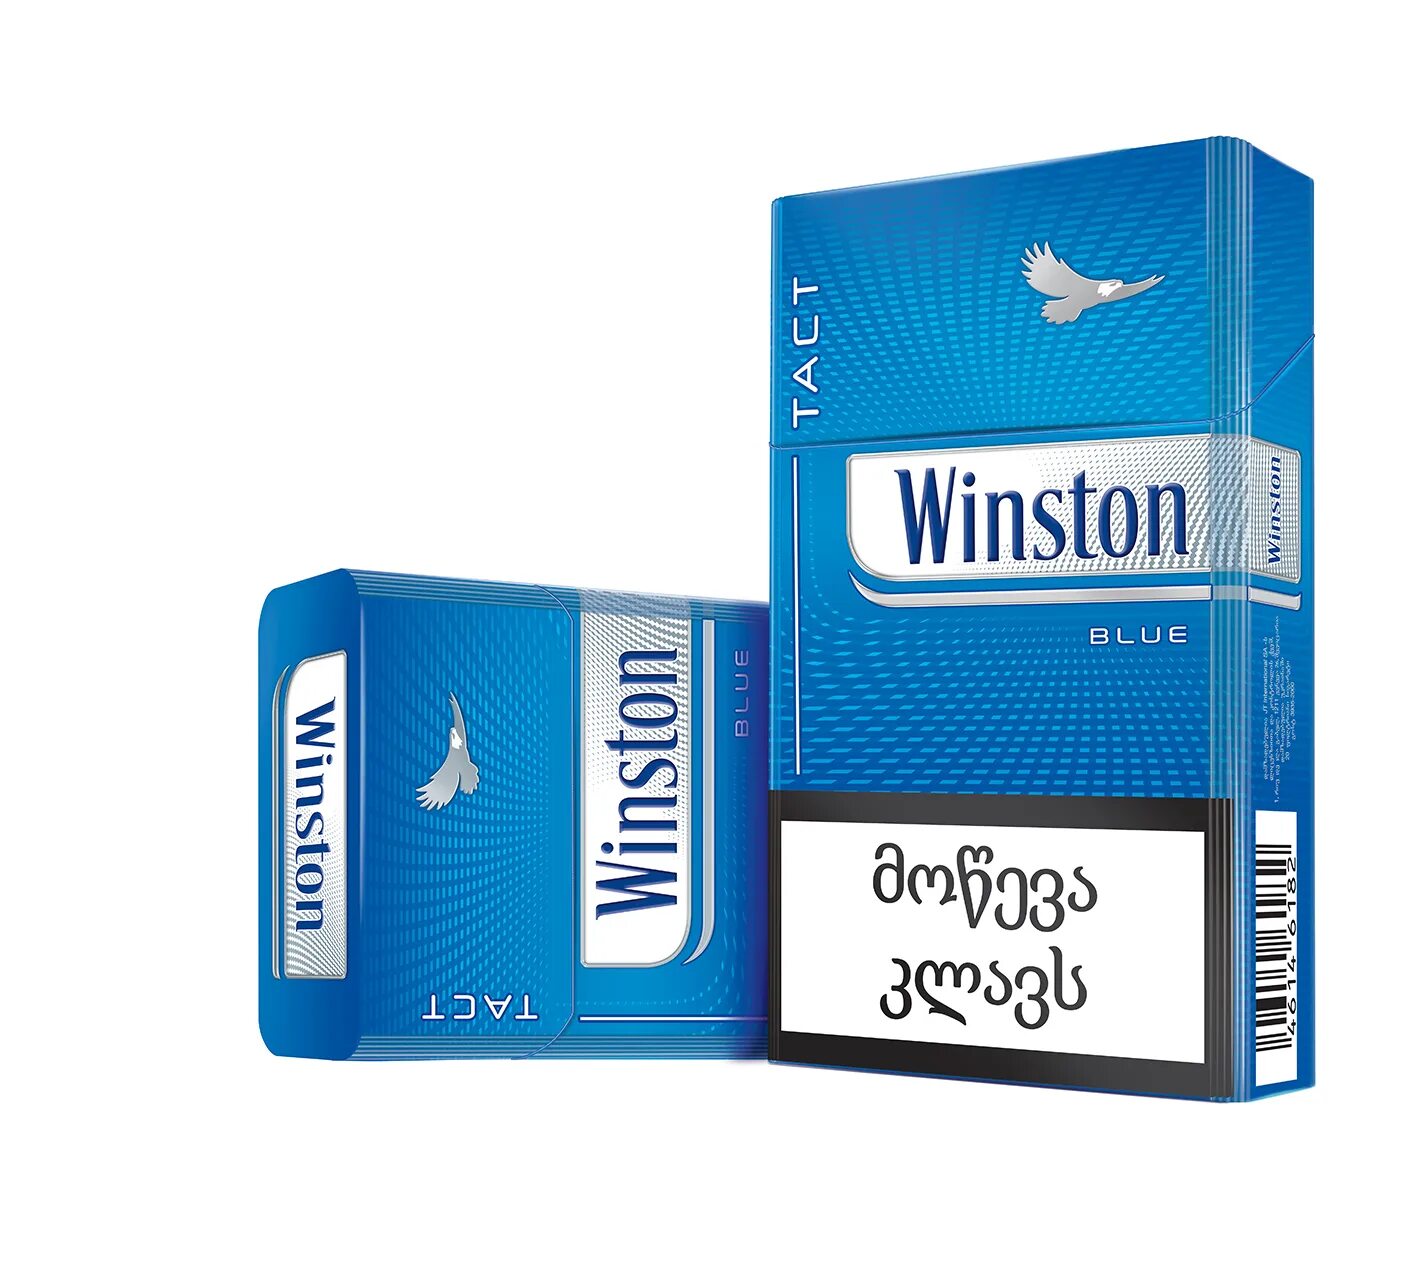 Винстон компакт Блю. Winston XS Compact. Винстон синий компакт 100. Сигареты Винстон тонкие синие. Купить сигареты winston